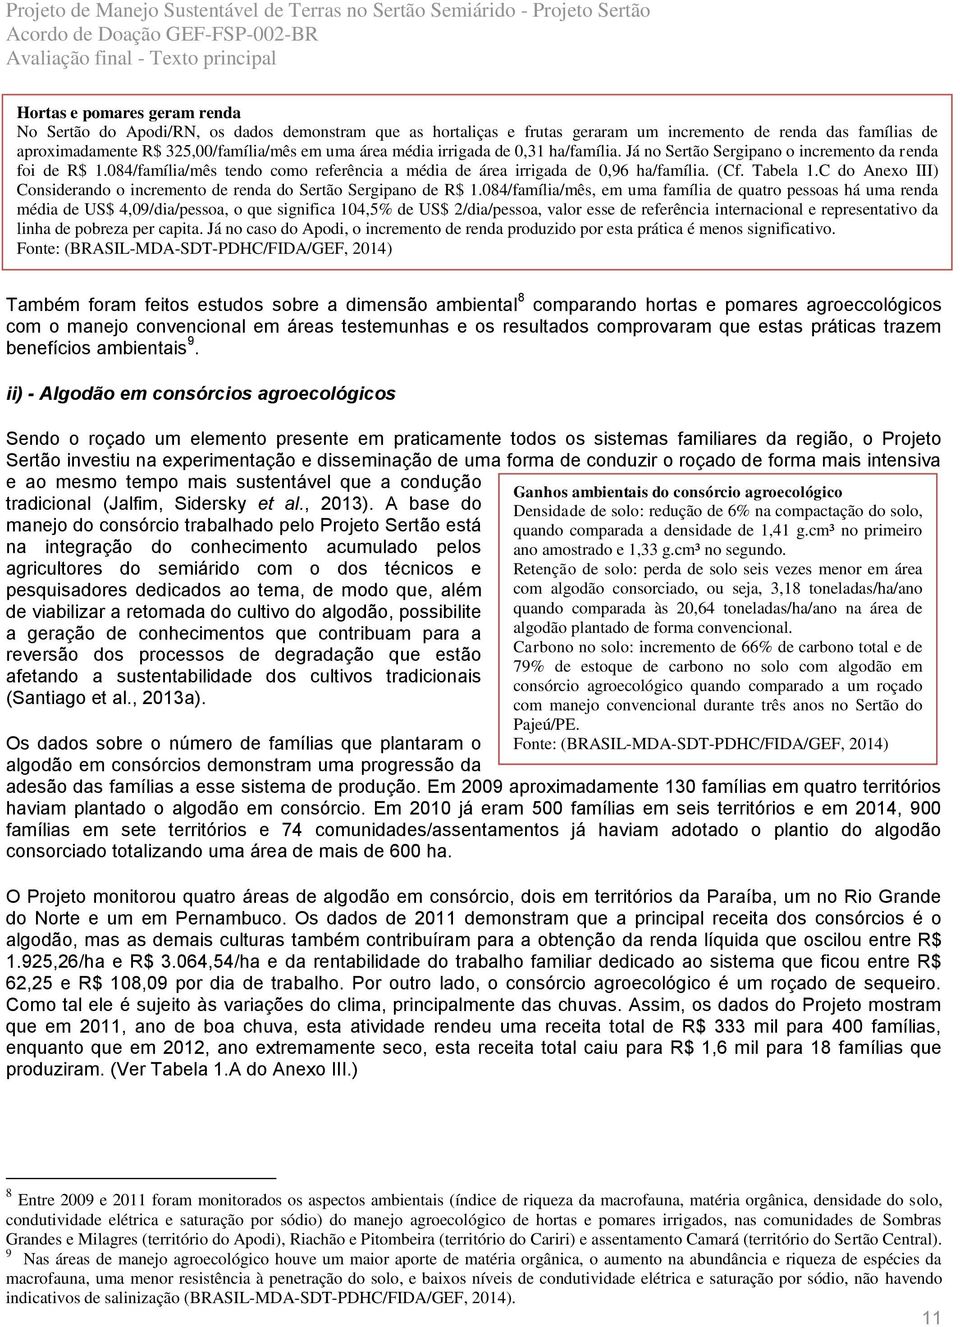 C do Anexo III) Considerando o incremento de renda do Sertão Sergipano de R$ 1.